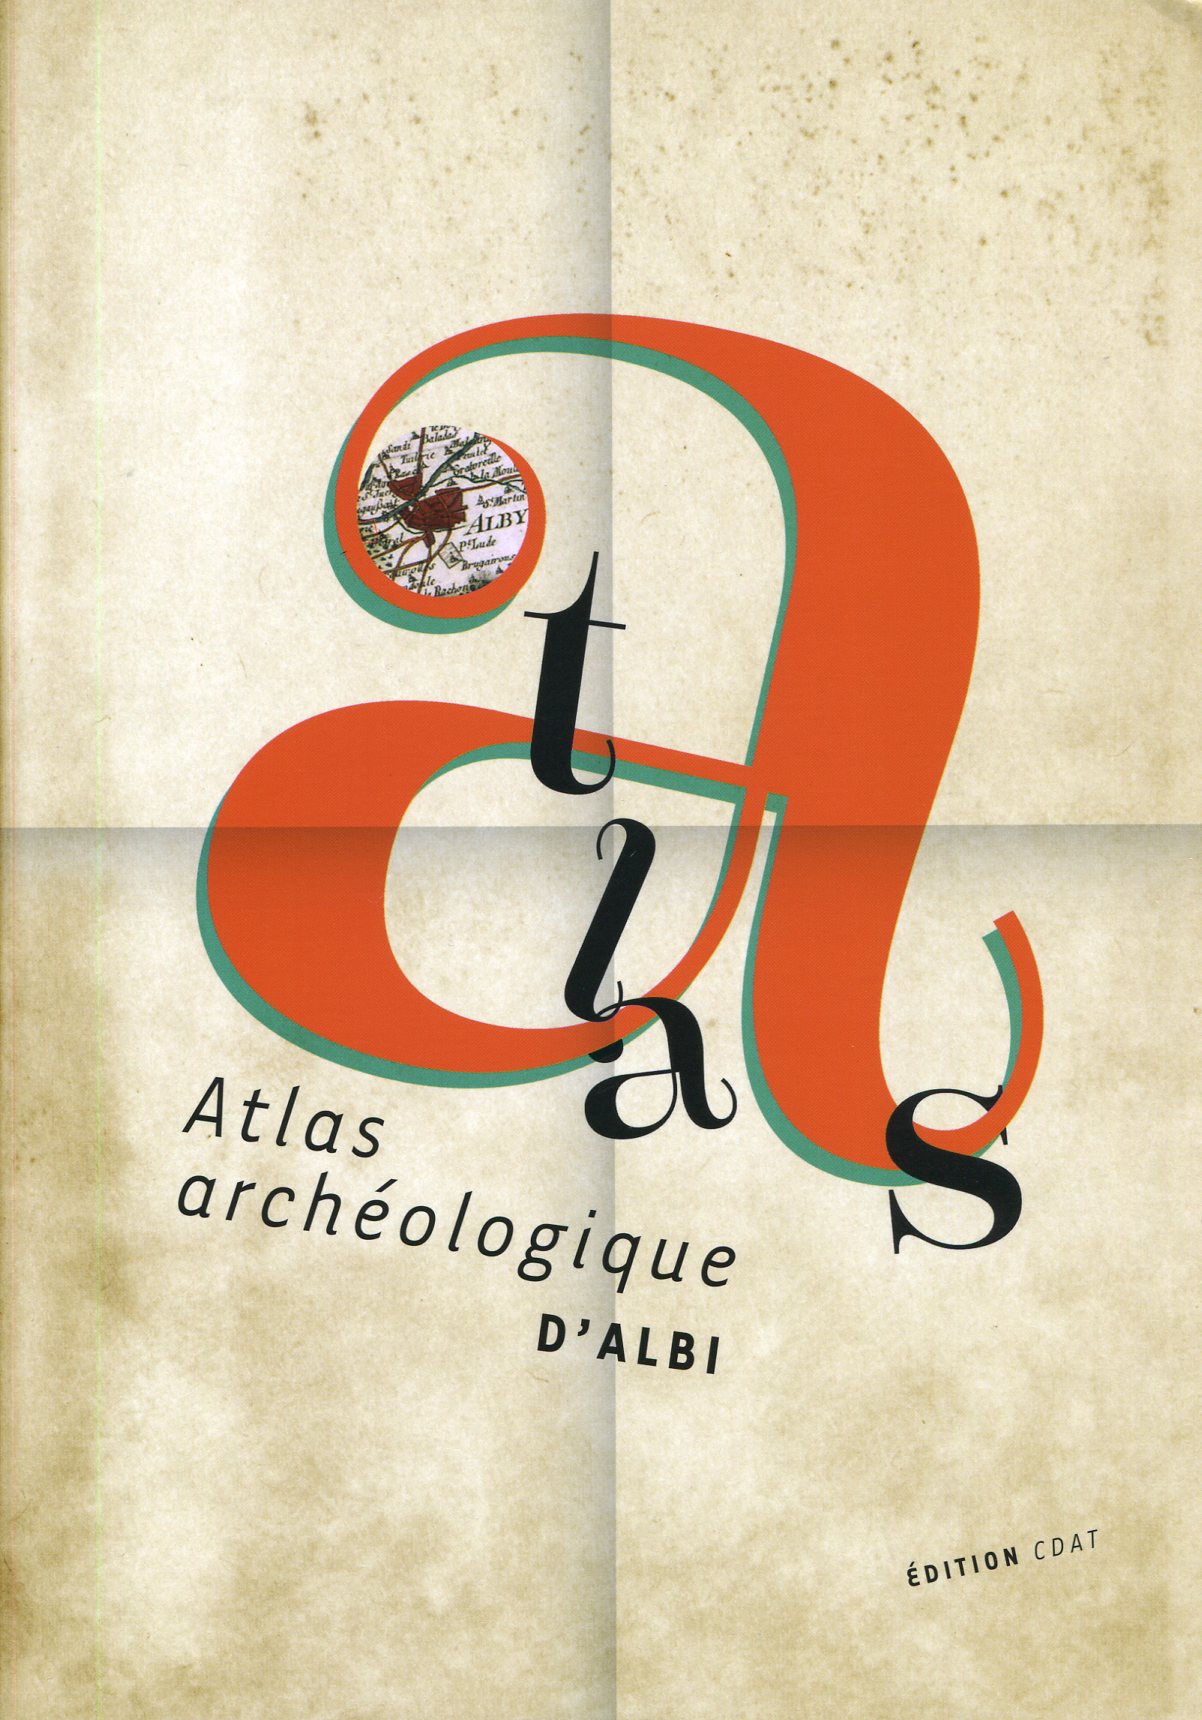 Atlas archéologique d'Albi, 2014, 178 p.